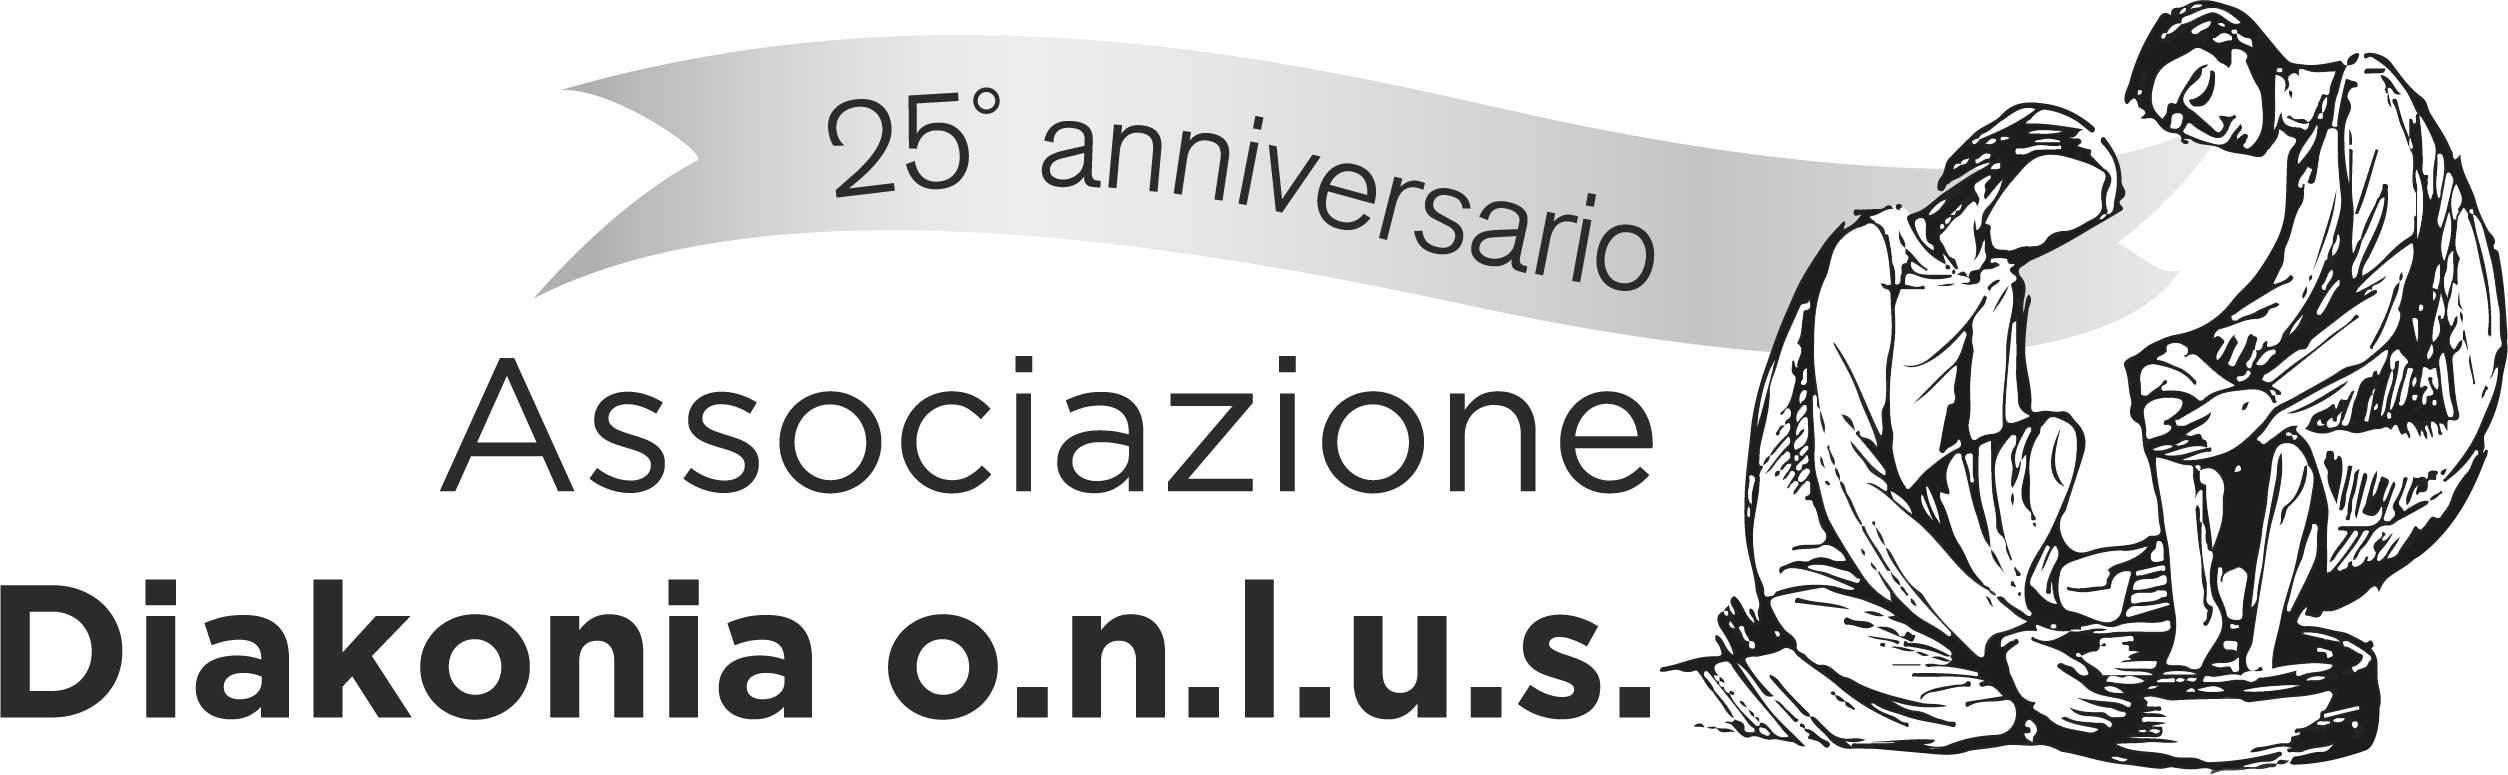 main-logo Diakonia onlus